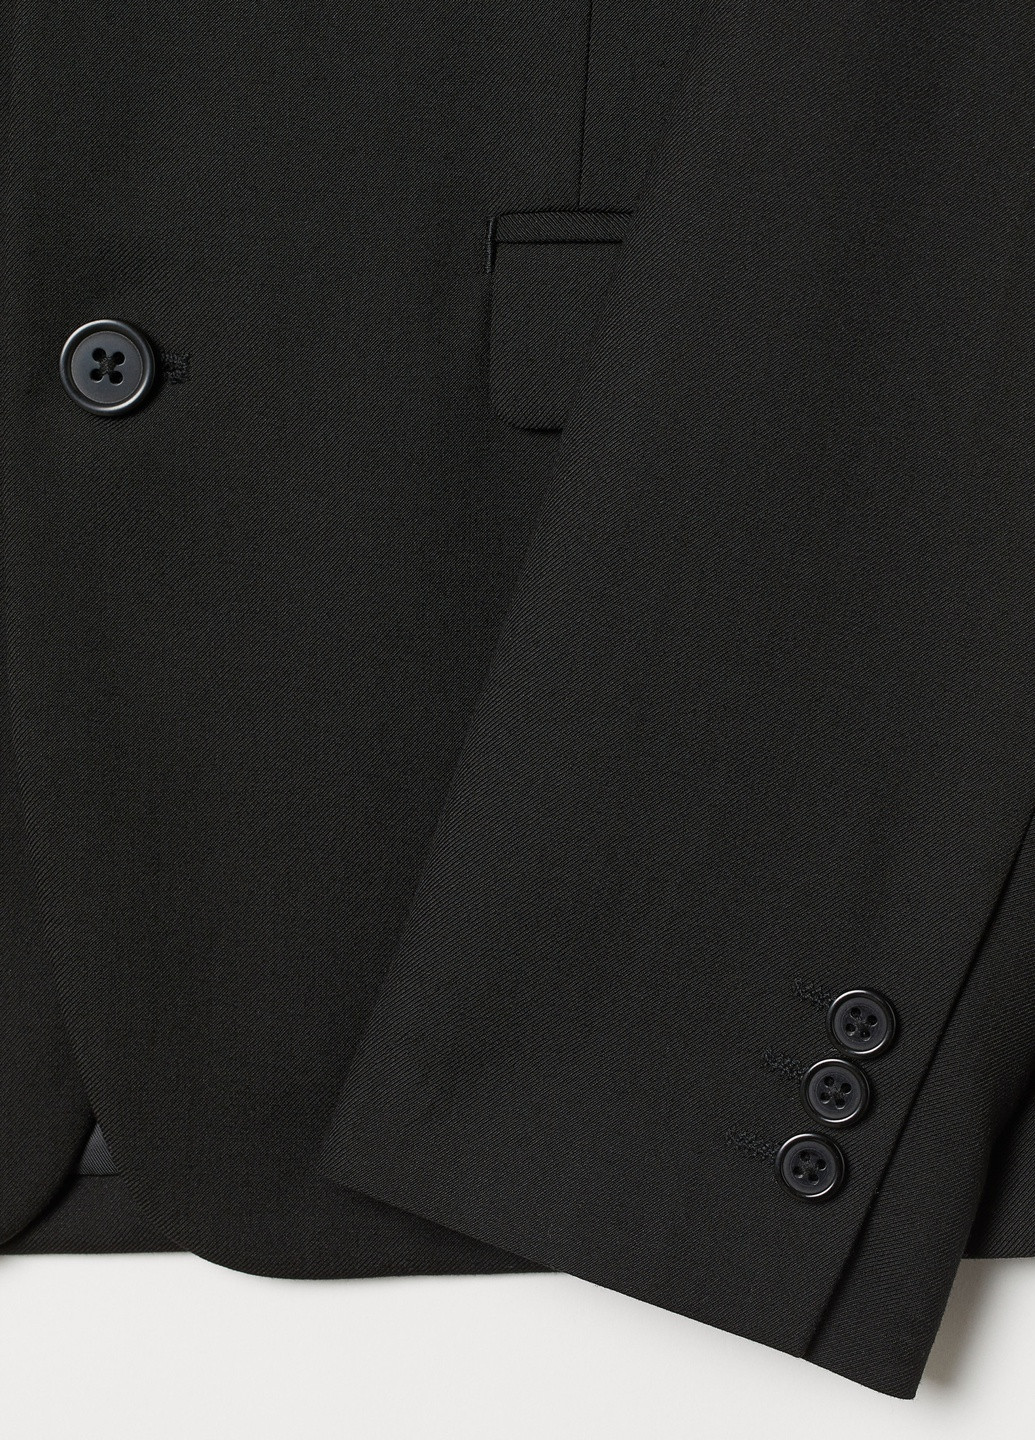 Пиджак H&M однотонный чёрный кэжуал полиэстер